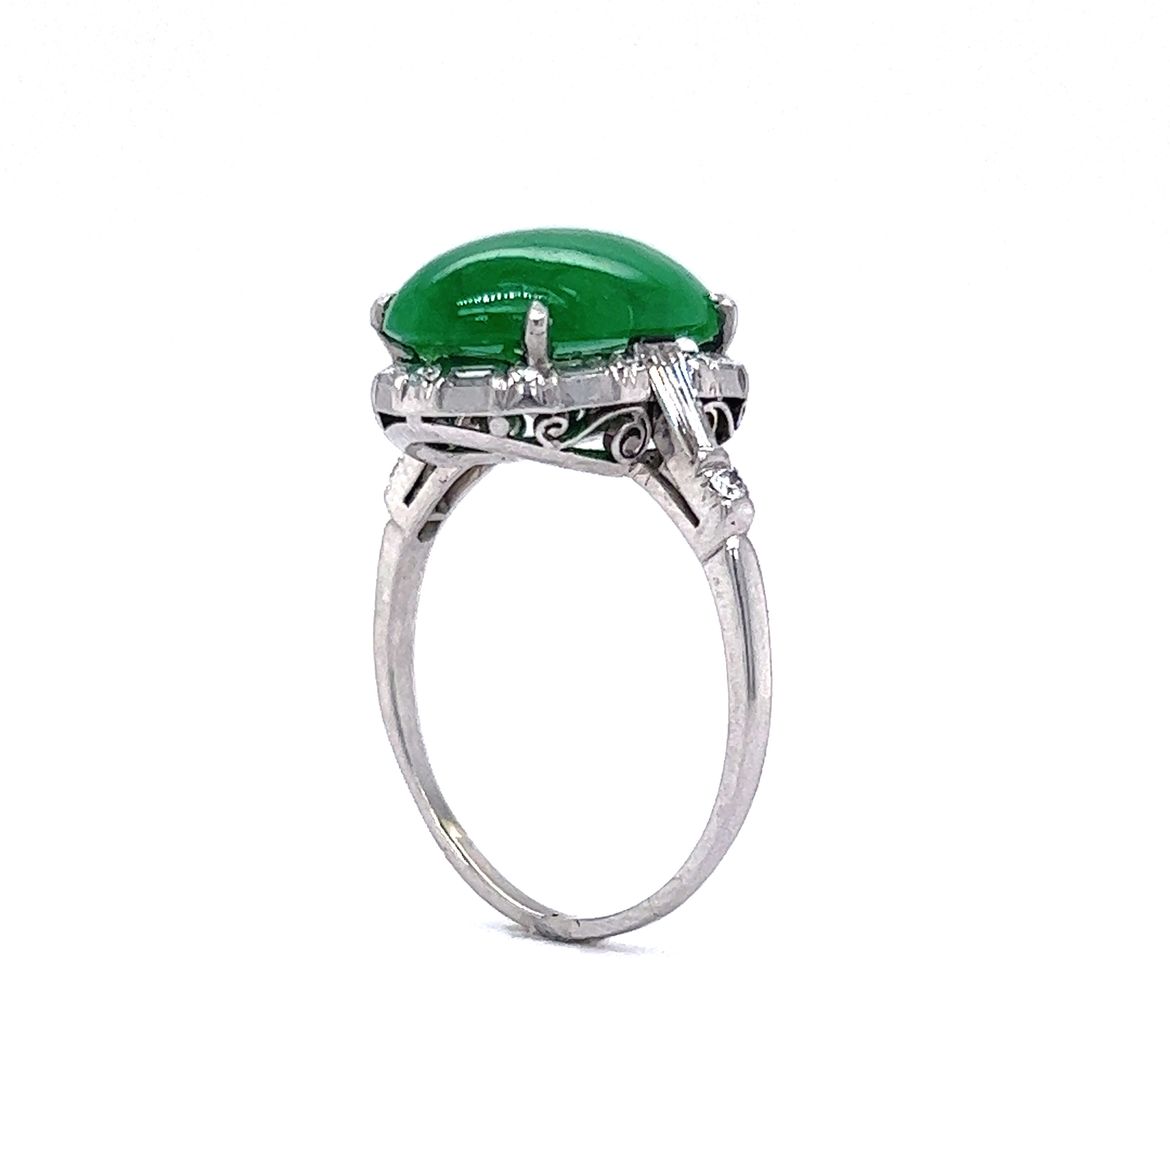 Jade & Diamond Cocktail Ring in Platinum